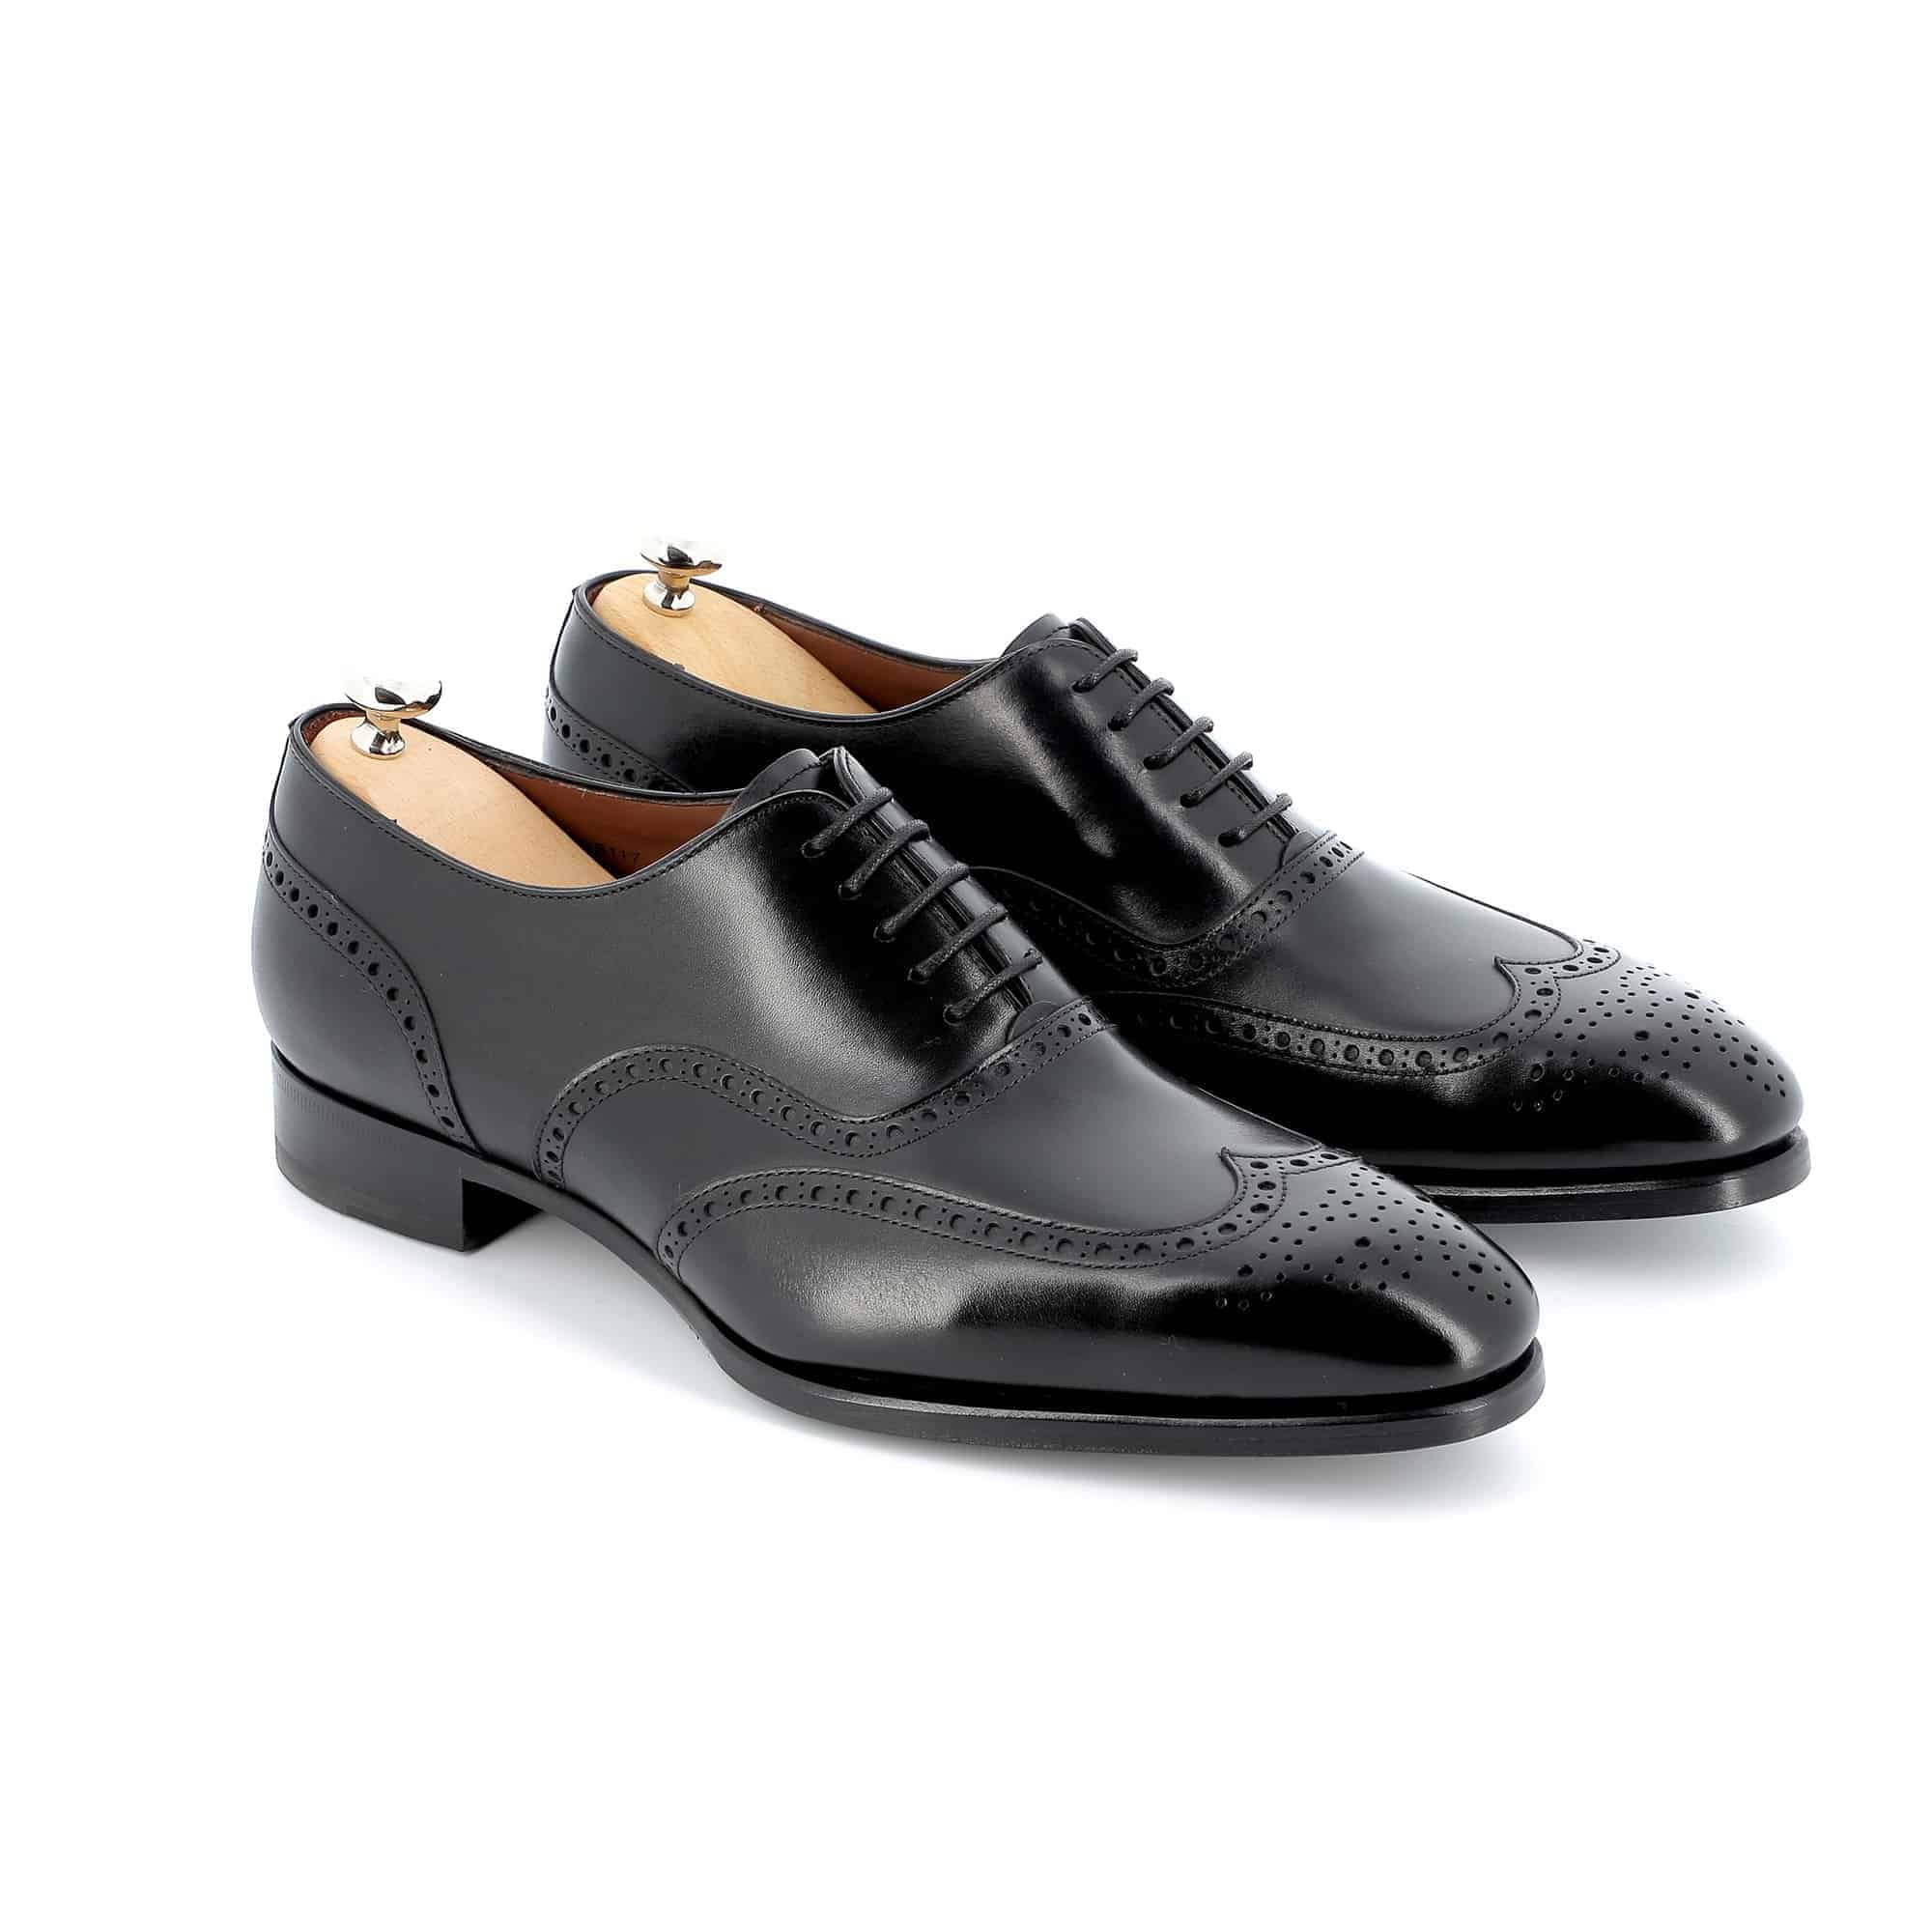 Chaussures Richelieu Charles cuir noir semelles cuir